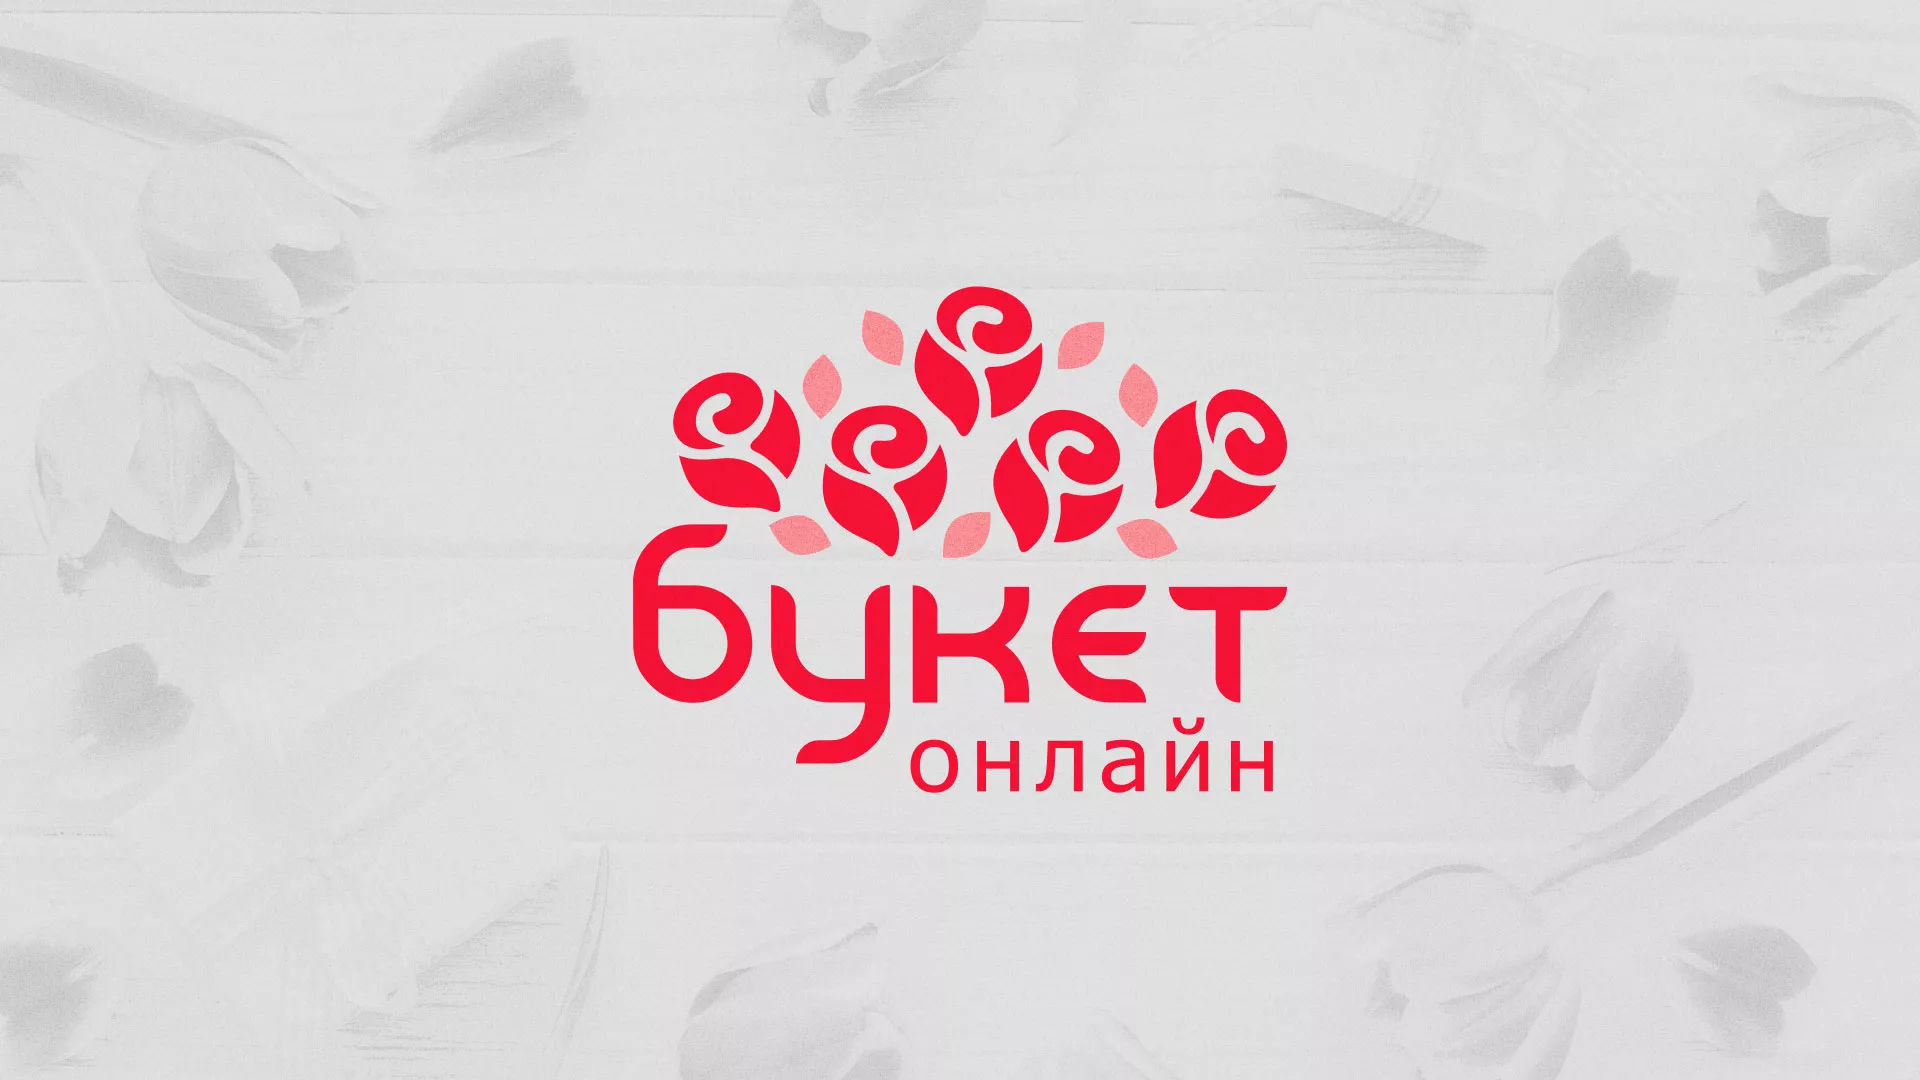 Создание интернет-магазина «Букет-онлайн» по цветам в Сергиевом Посаде